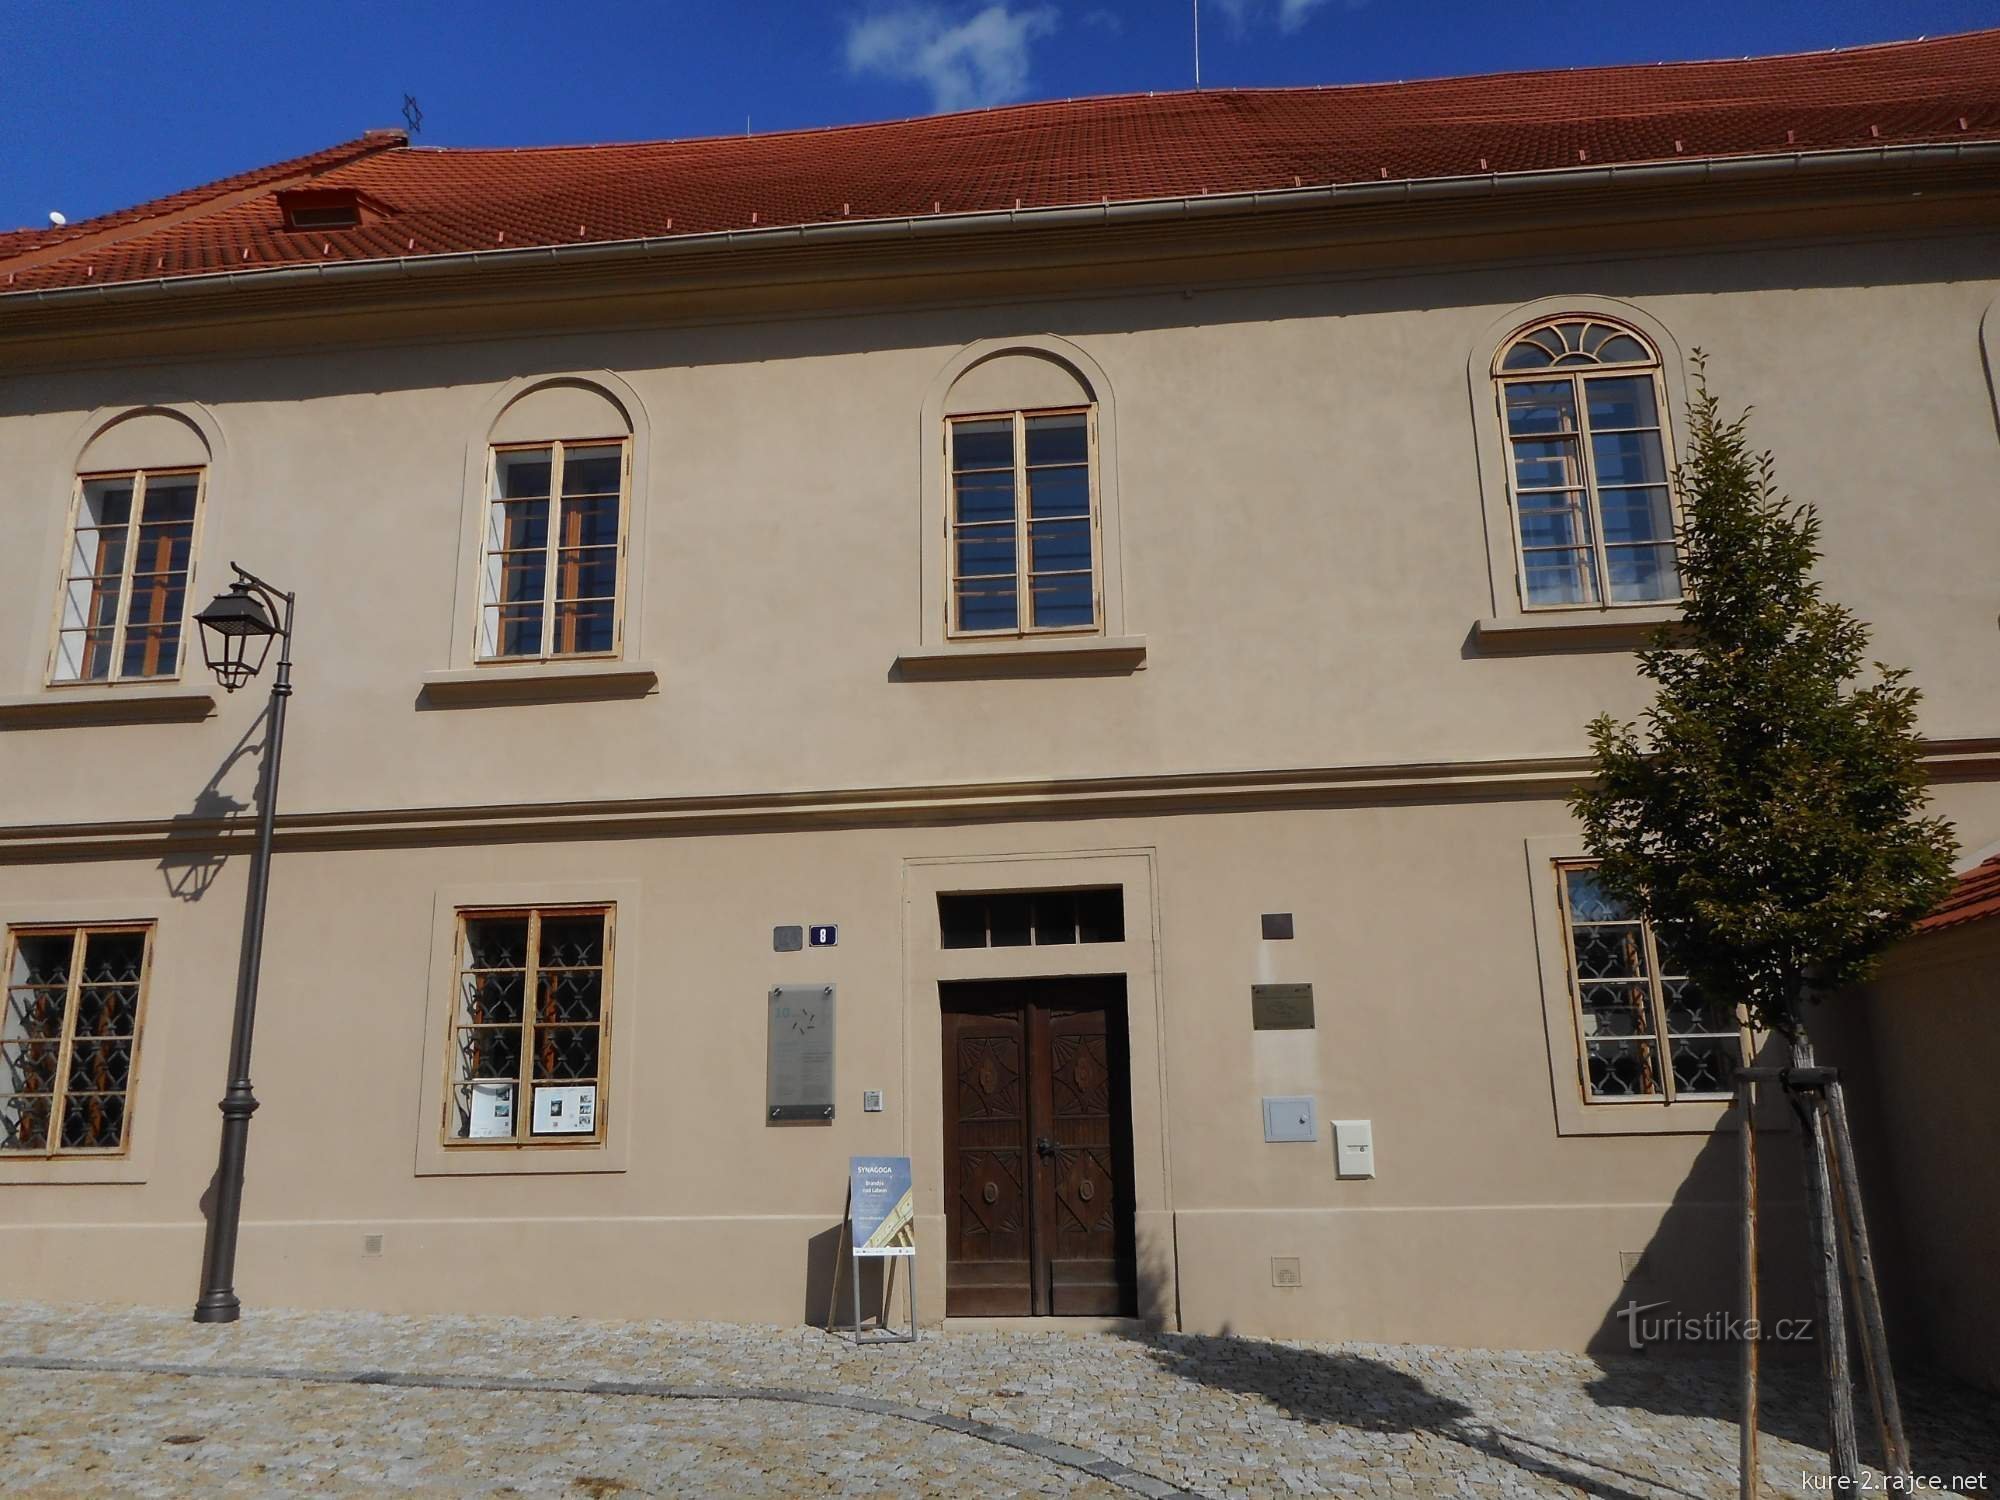 Ngày nay, giáo đường Do Thái đóng vai trò như một viện bảo tàng của người Do Thái.